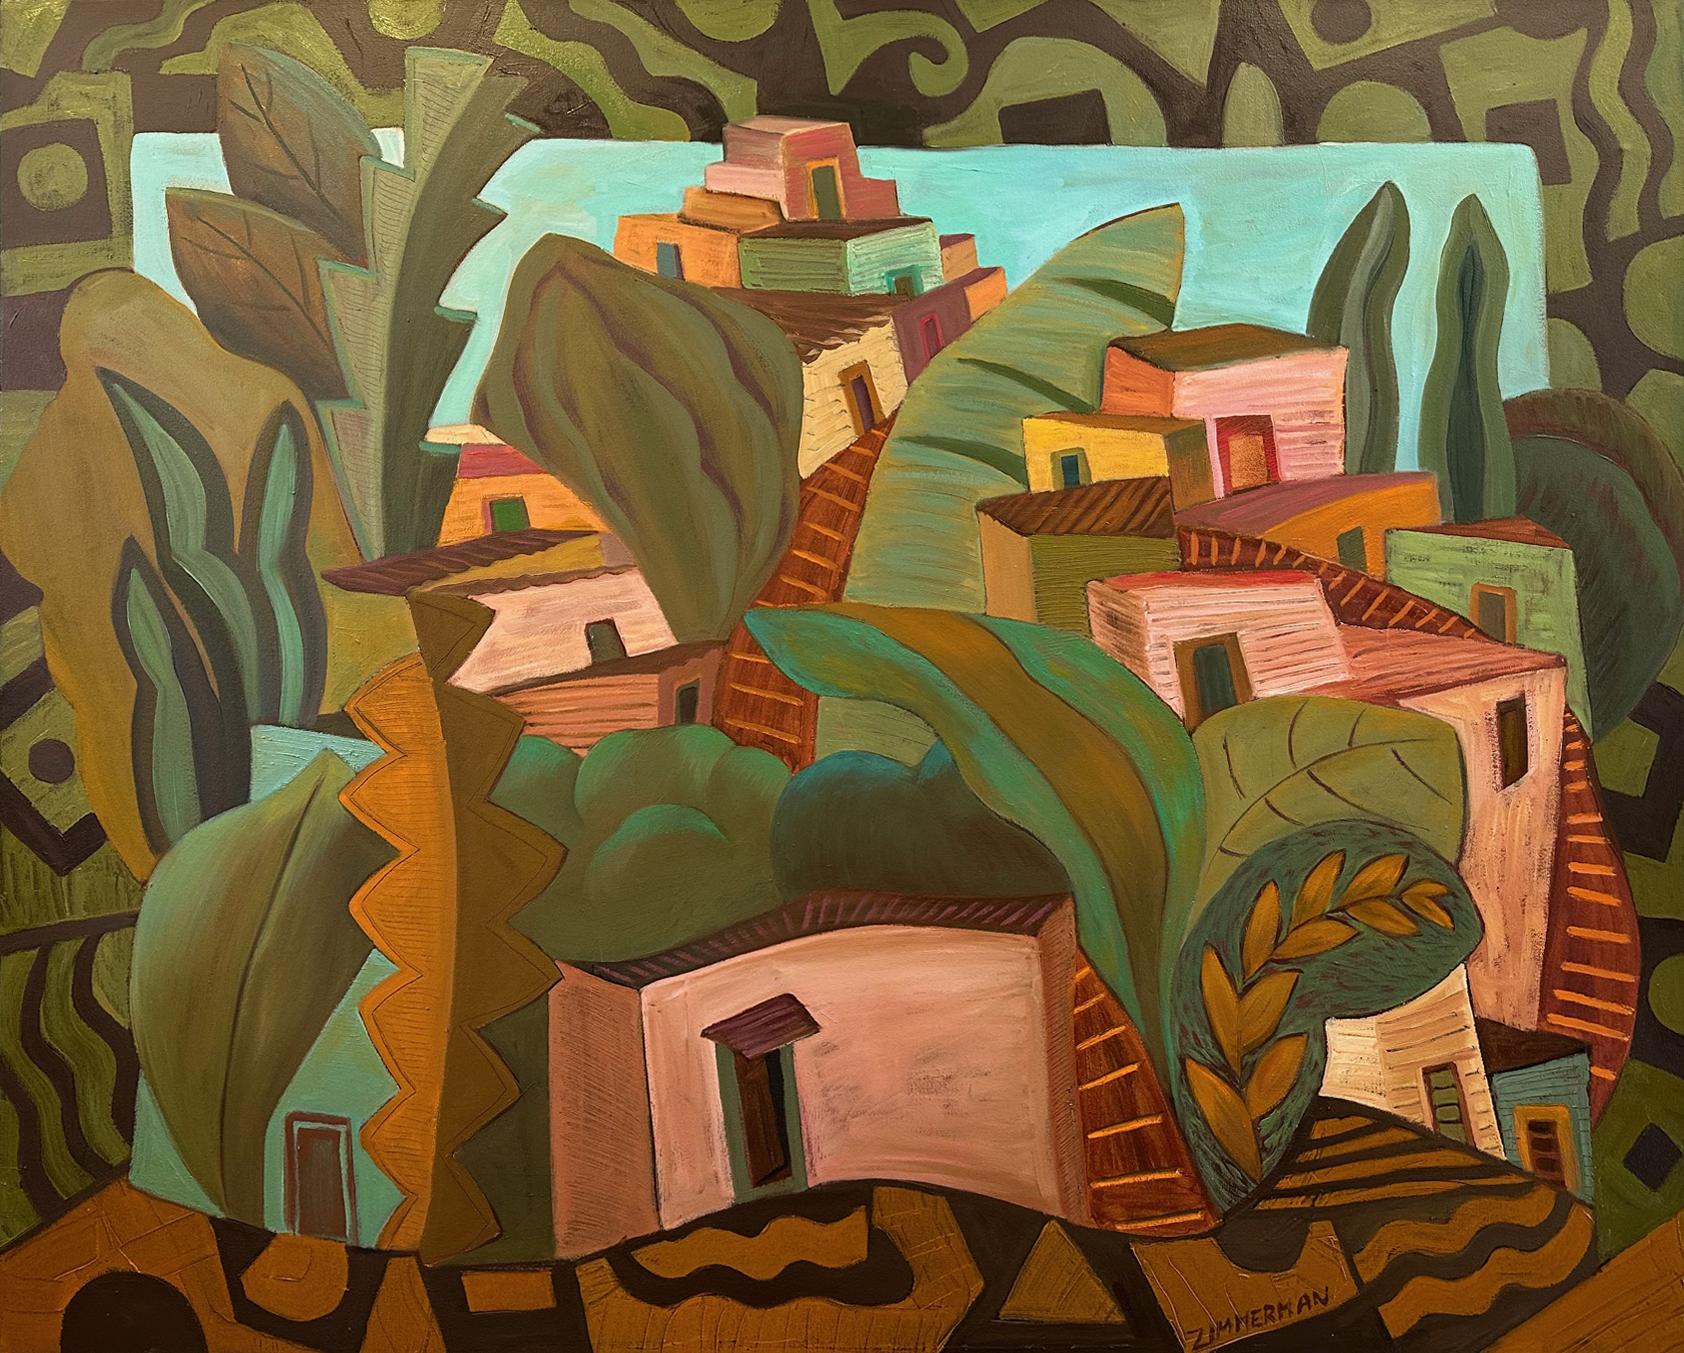 Villa Nova – Abstrakte Stadtlandschaft von Marc Zimmerman


Marc Zimmerman schafft verspielte Gemälde, ob tiefgründiger, geheimnisvoller Dschungel oder herrlich skurrile Blumen. Seine Farbpalette erkundet verschiedene Harmonien und überrascht doch